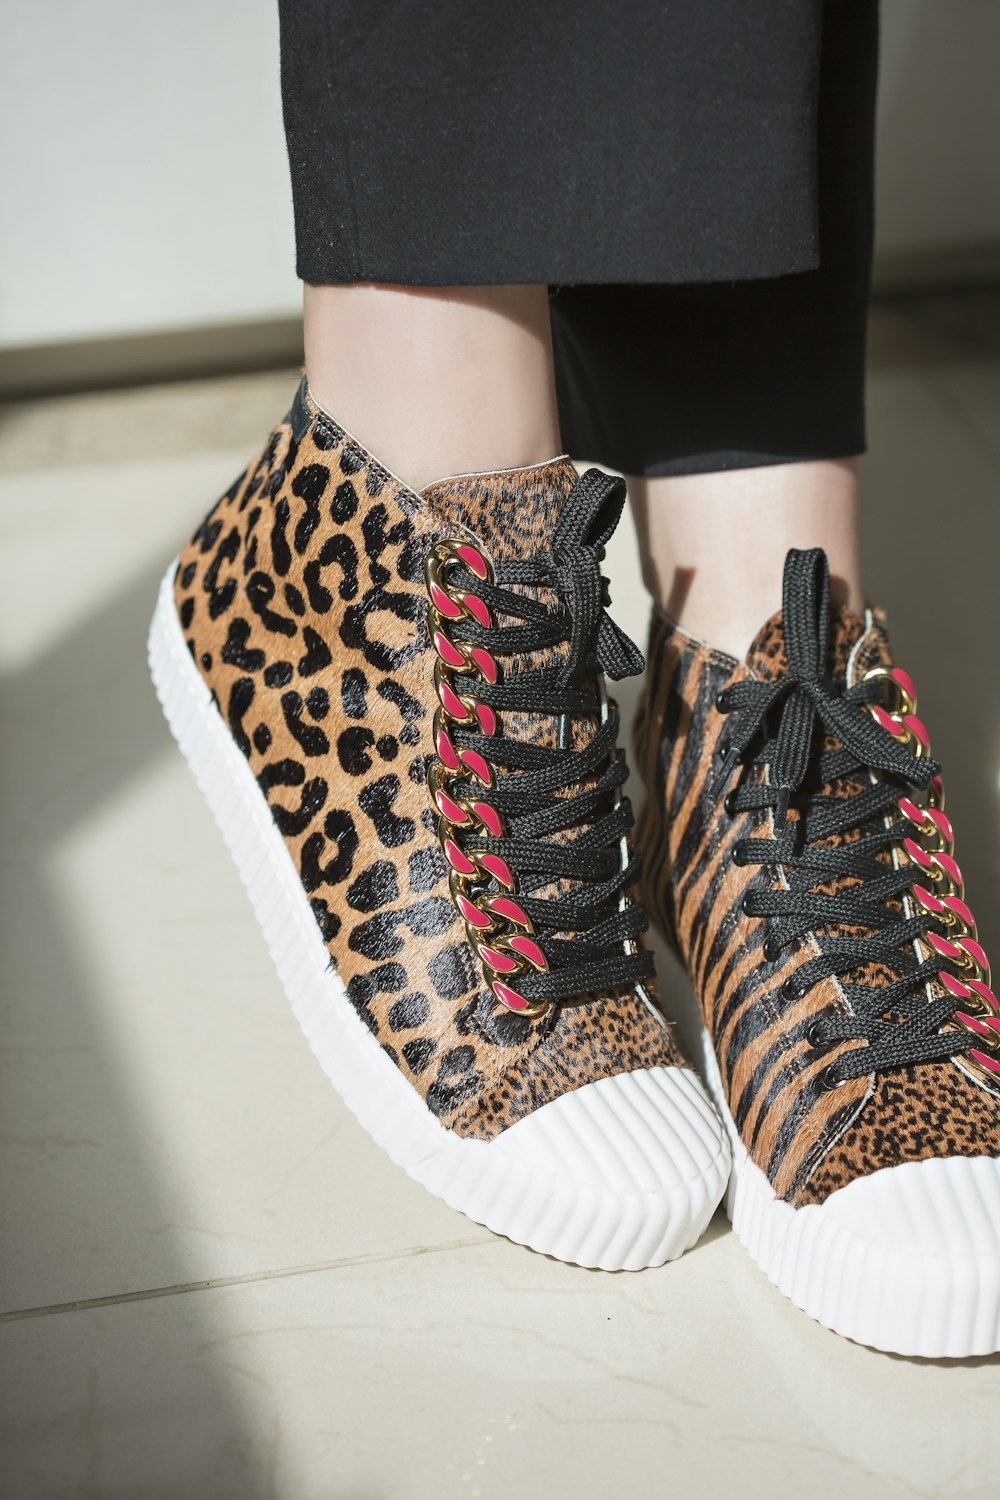 um close up de uma pessoa usando tênis de estampa de leopardo